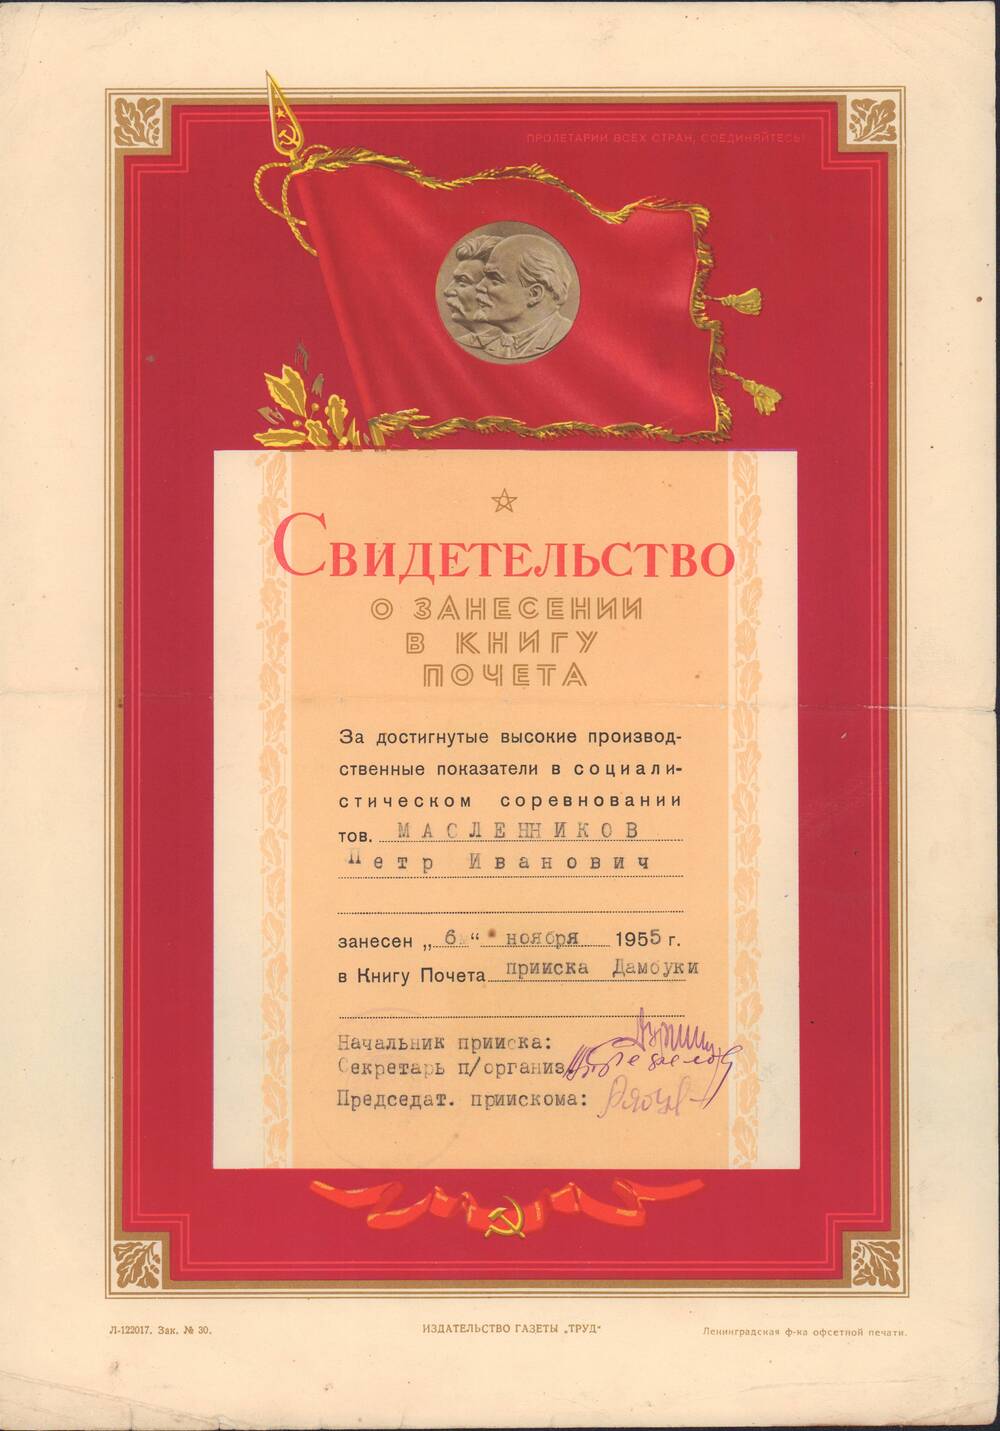 Свидетельство о занесении Масленникова П.И. в Книгу Почета прииска Дамбуки за достигнутые высокие производственные показатели в социалистическом соревновании от руководства Дамбуки 6 ноября 1955 года.